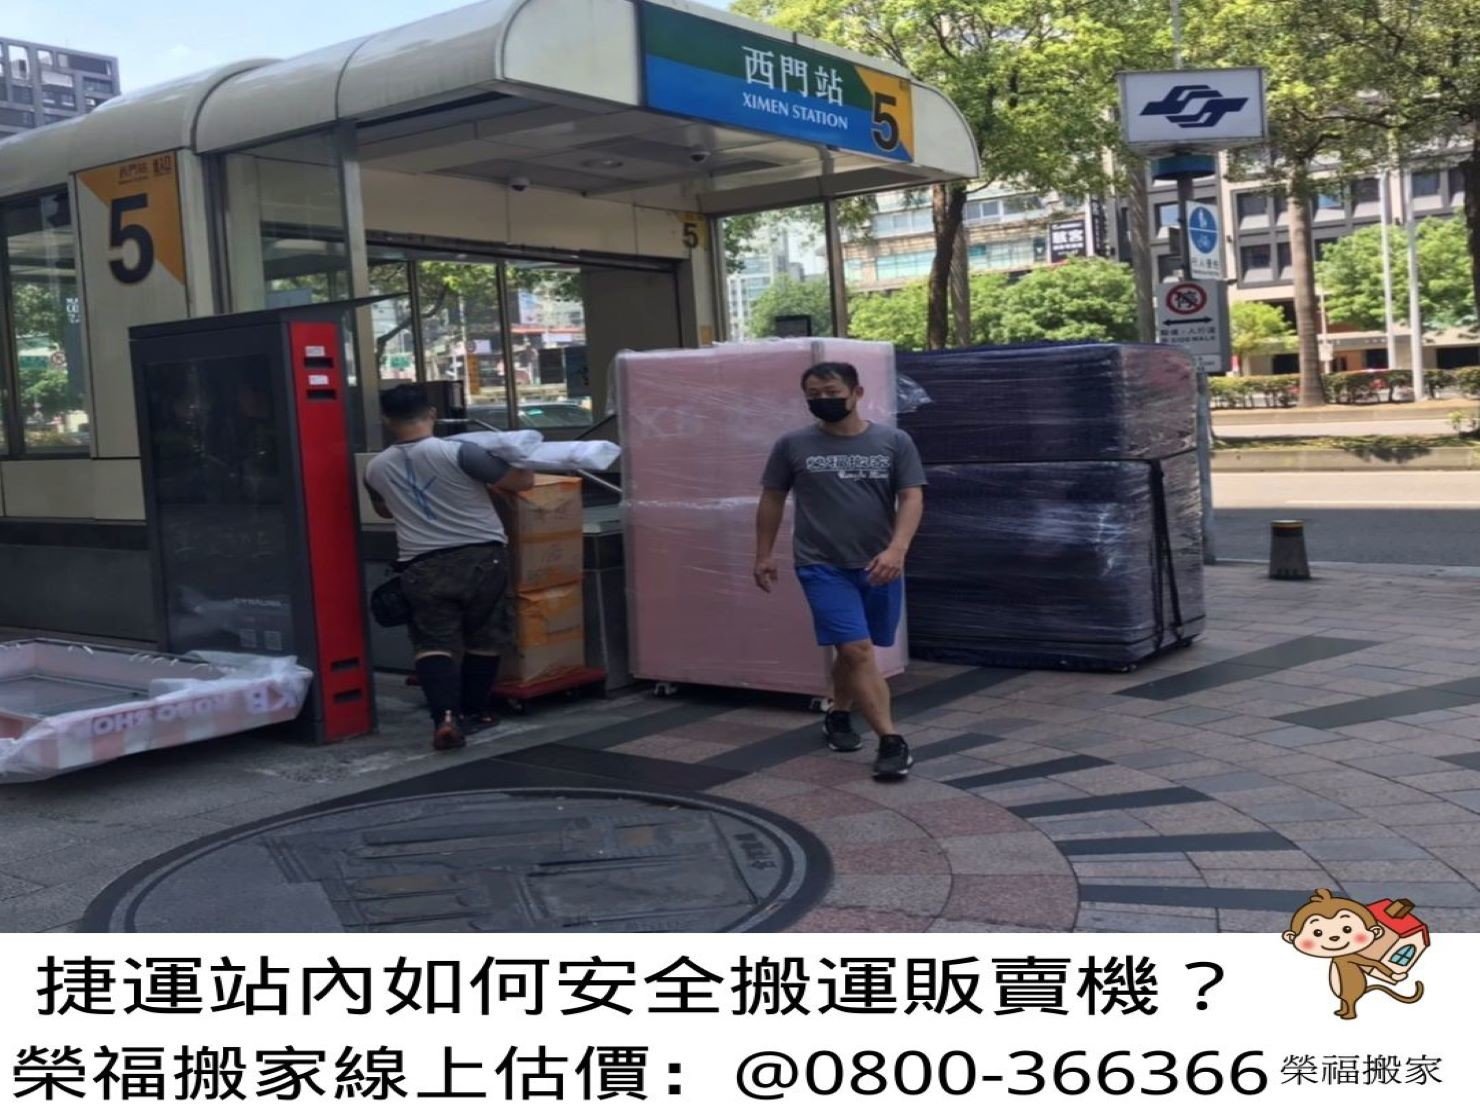 【重物搬運實錄】在人來人往車站內搬運大型重物自動販賣機需注意哪些細節？